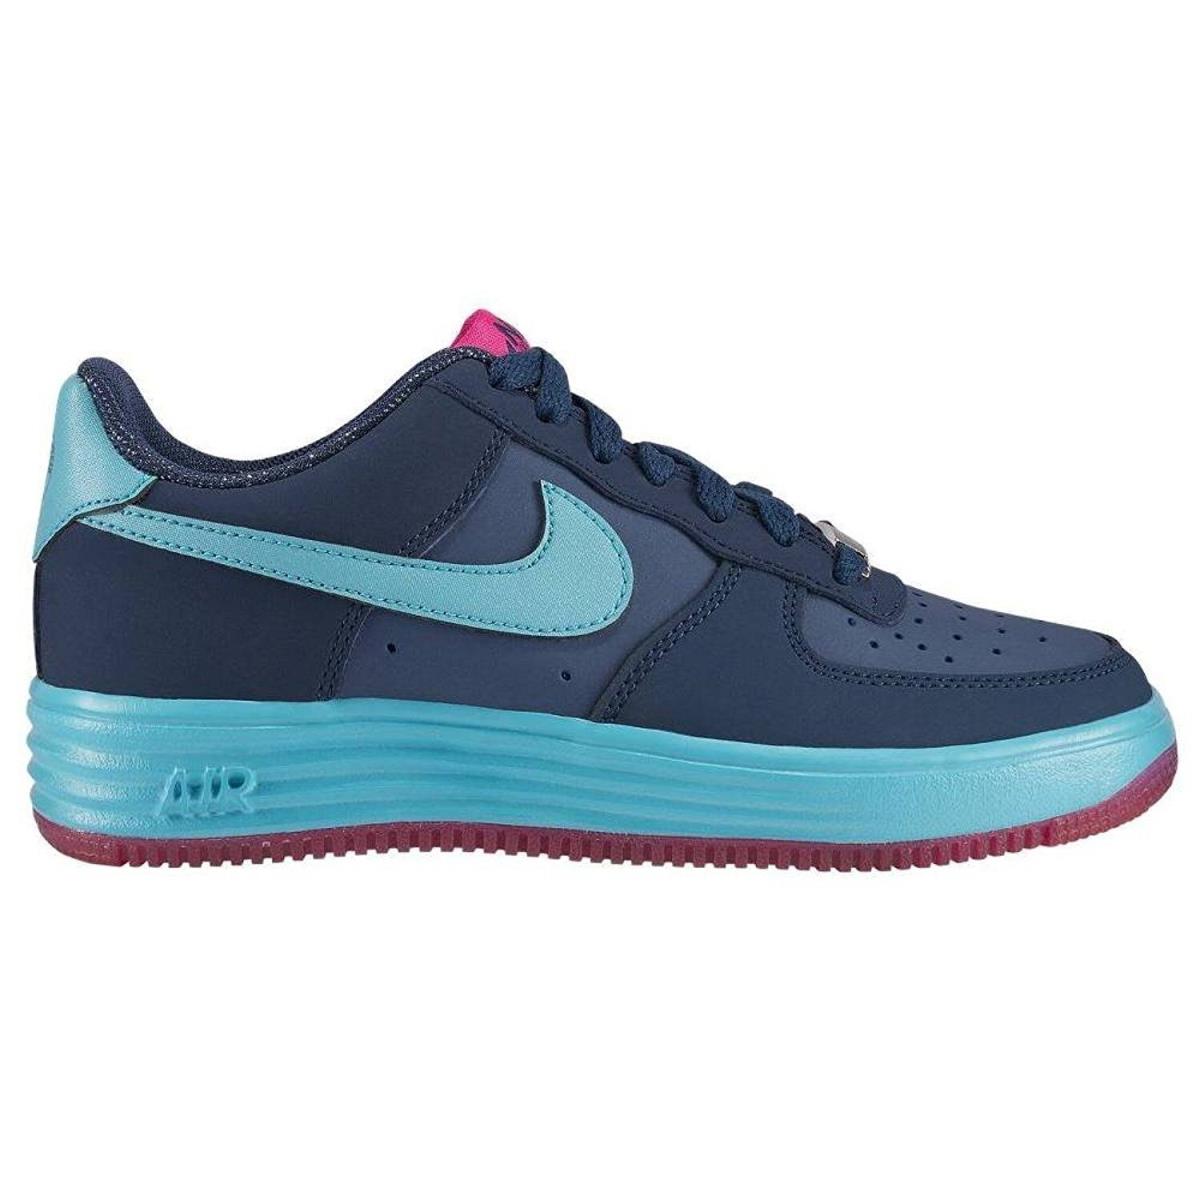 Boy`s Nike Lunar Force Blue 580538 401 Size 4.5Y - Blue